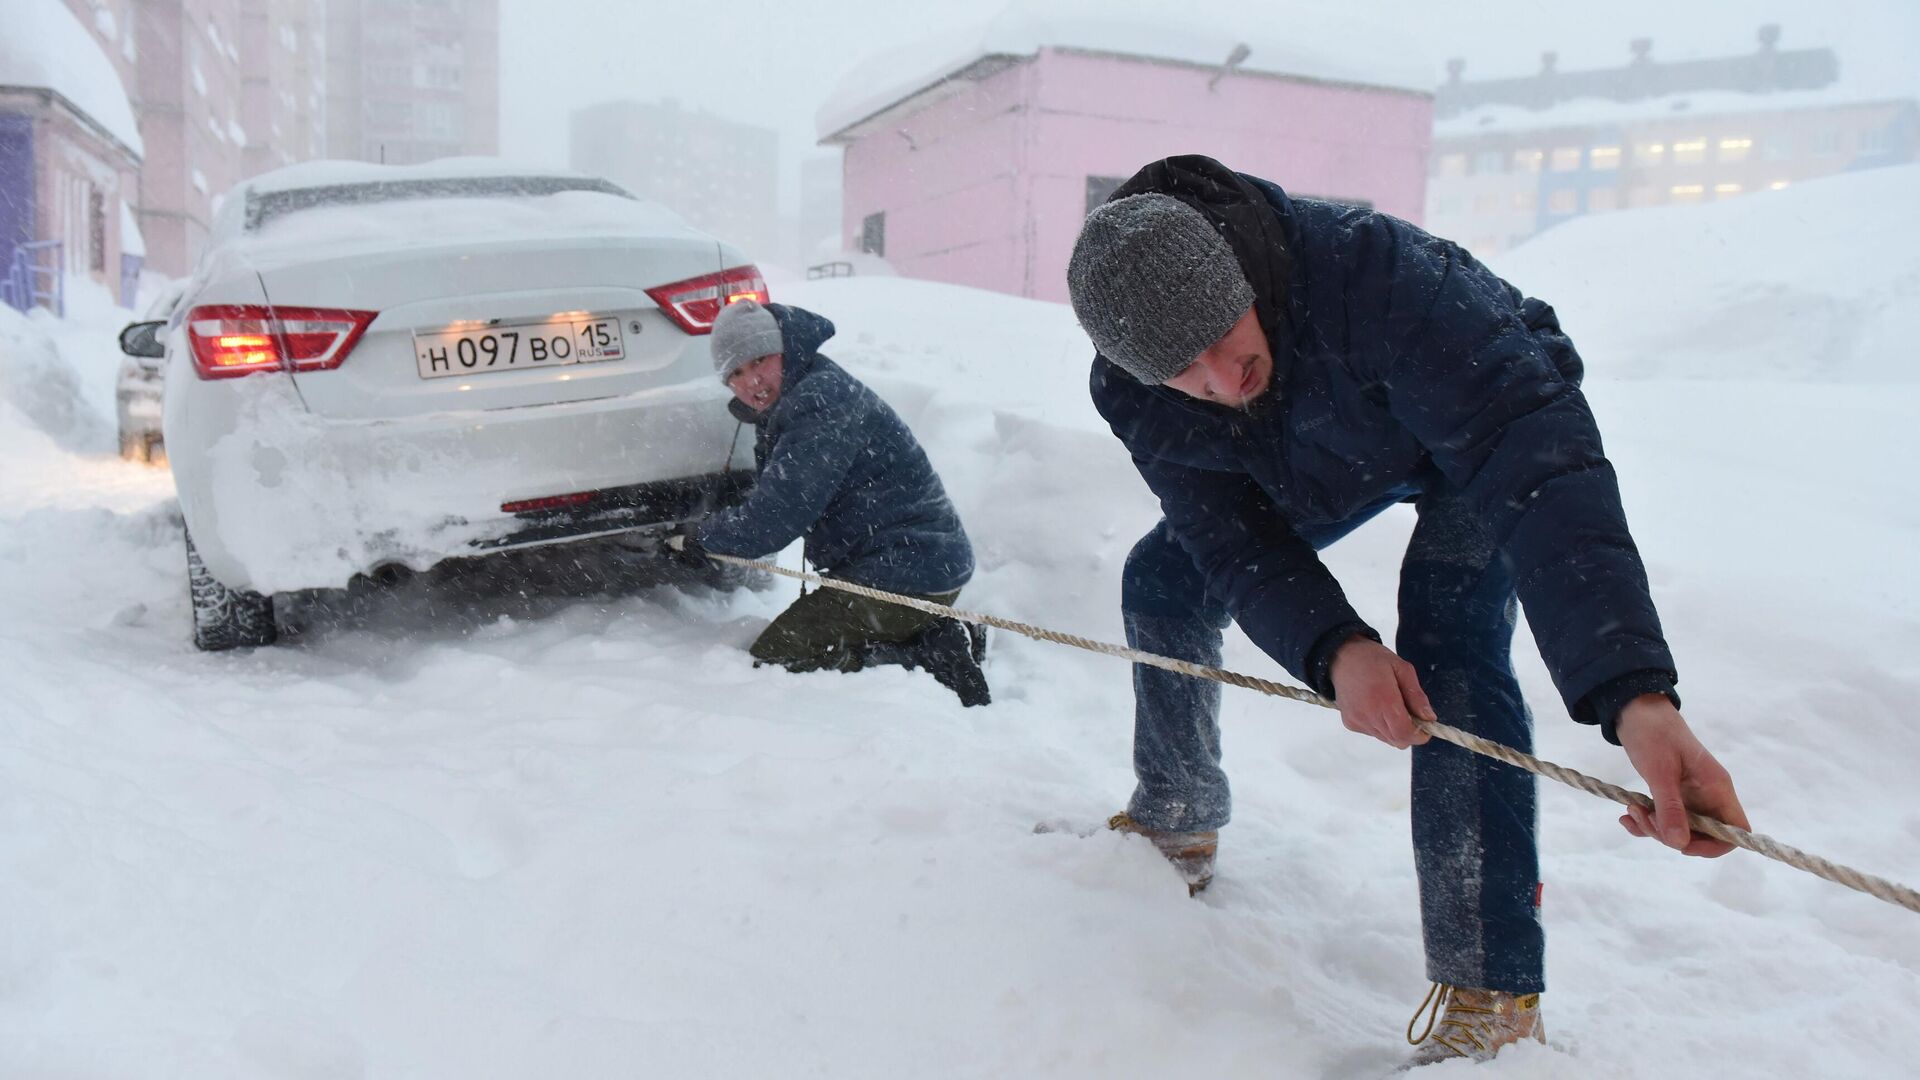 Молодые люди с помощью троса вытаскивают автомобиль, застрявший в сугробе во время снегопада в Норильске - РИА Новости, 1920, 03.12.2020